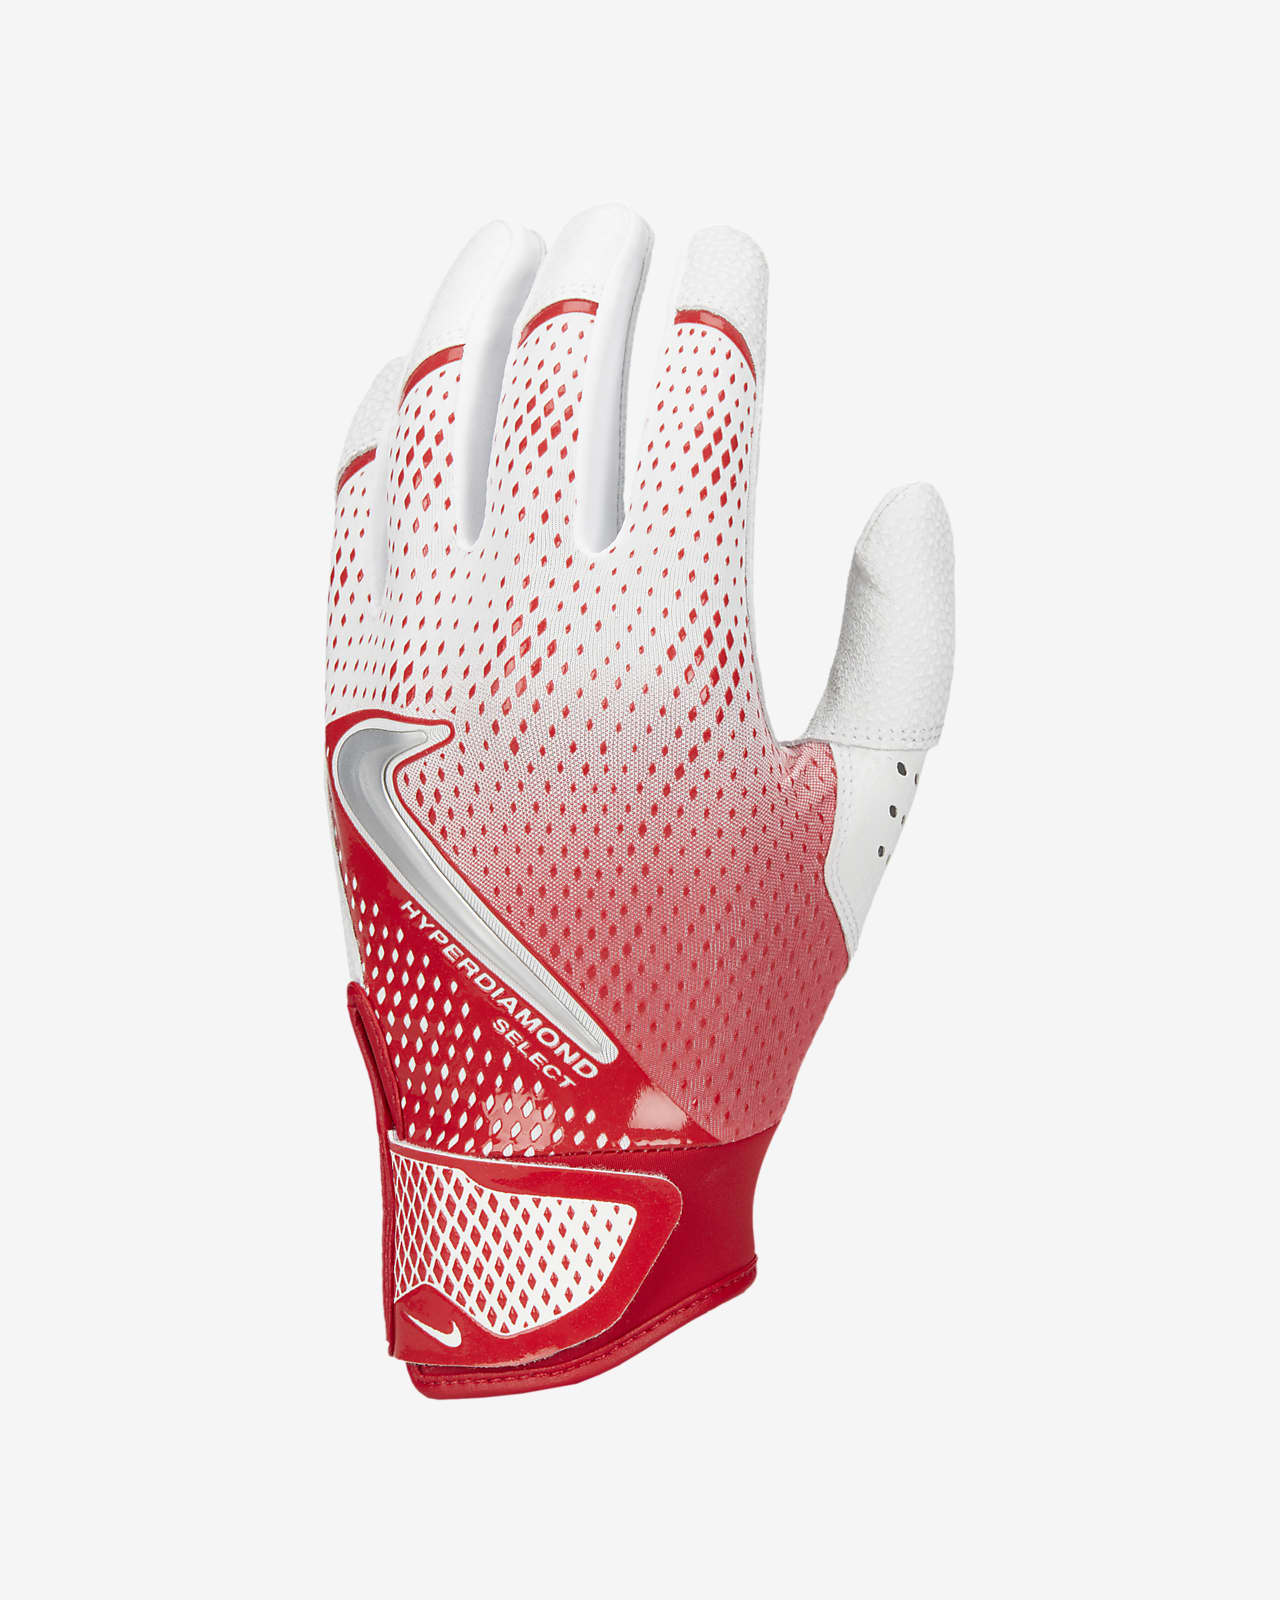 Nike Hyperdiamond Select Baseball Gloves